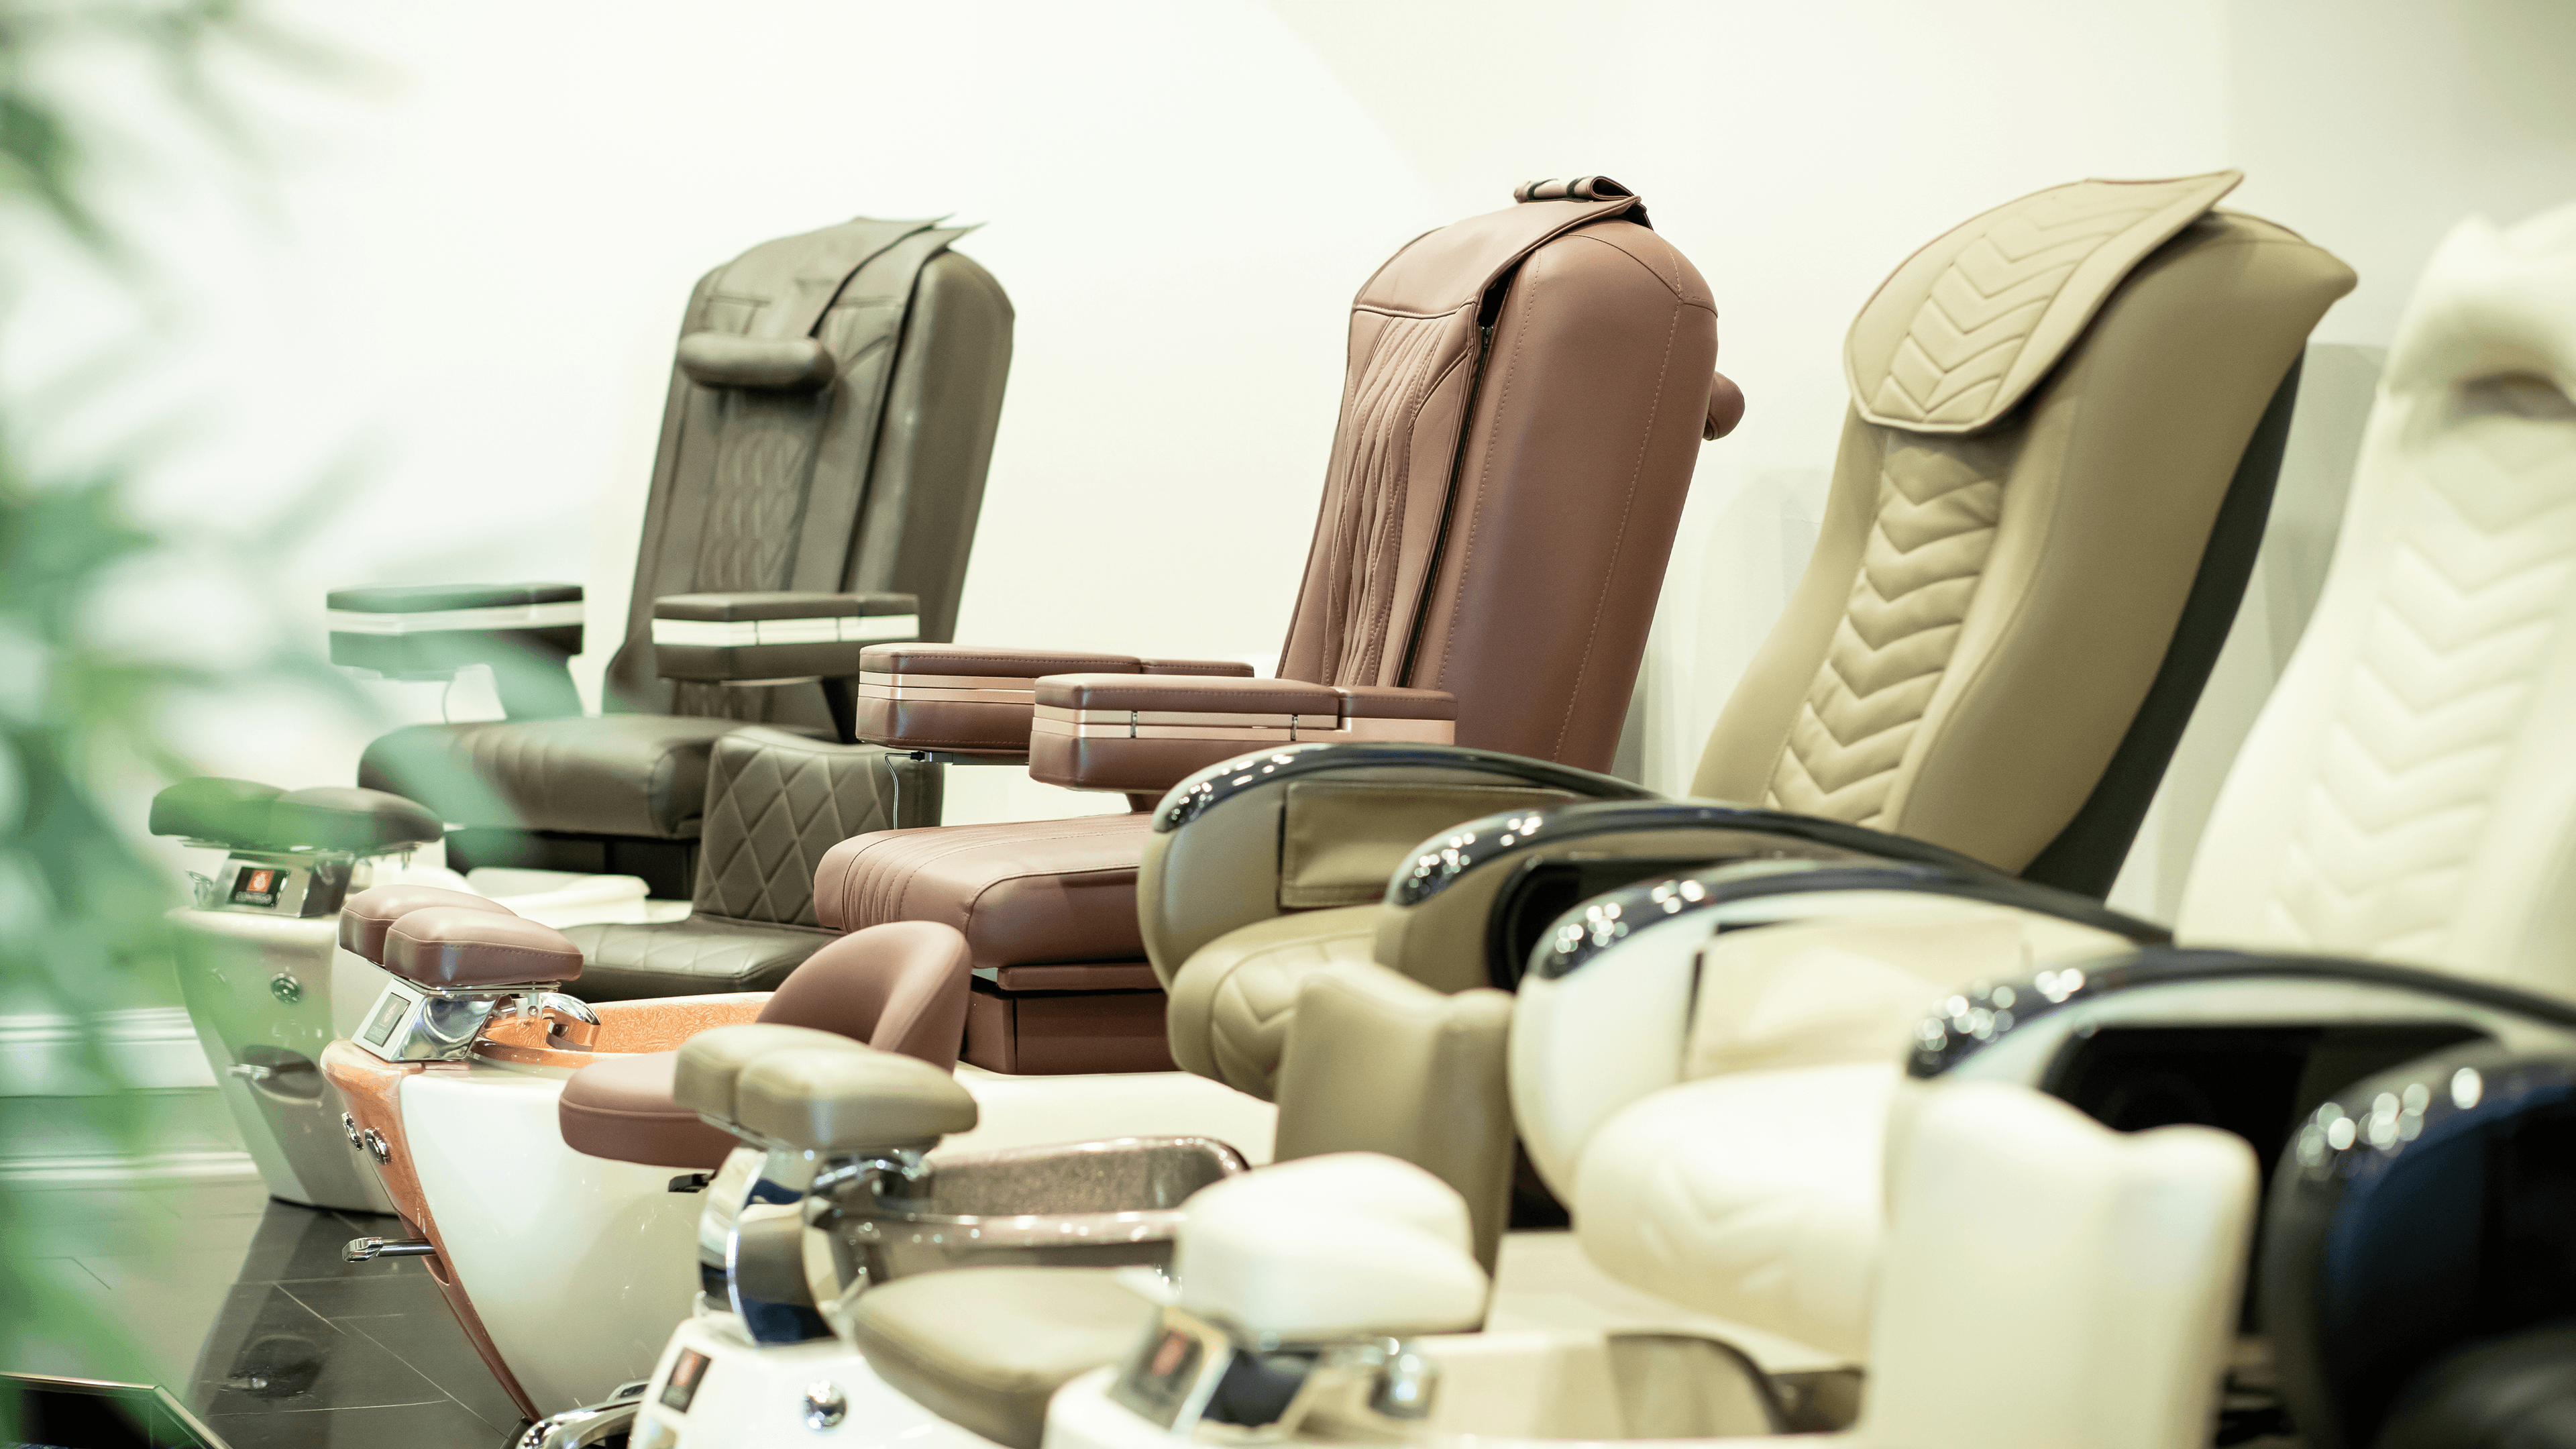 Pedicure Massage Chairs - Contego Spa Designs